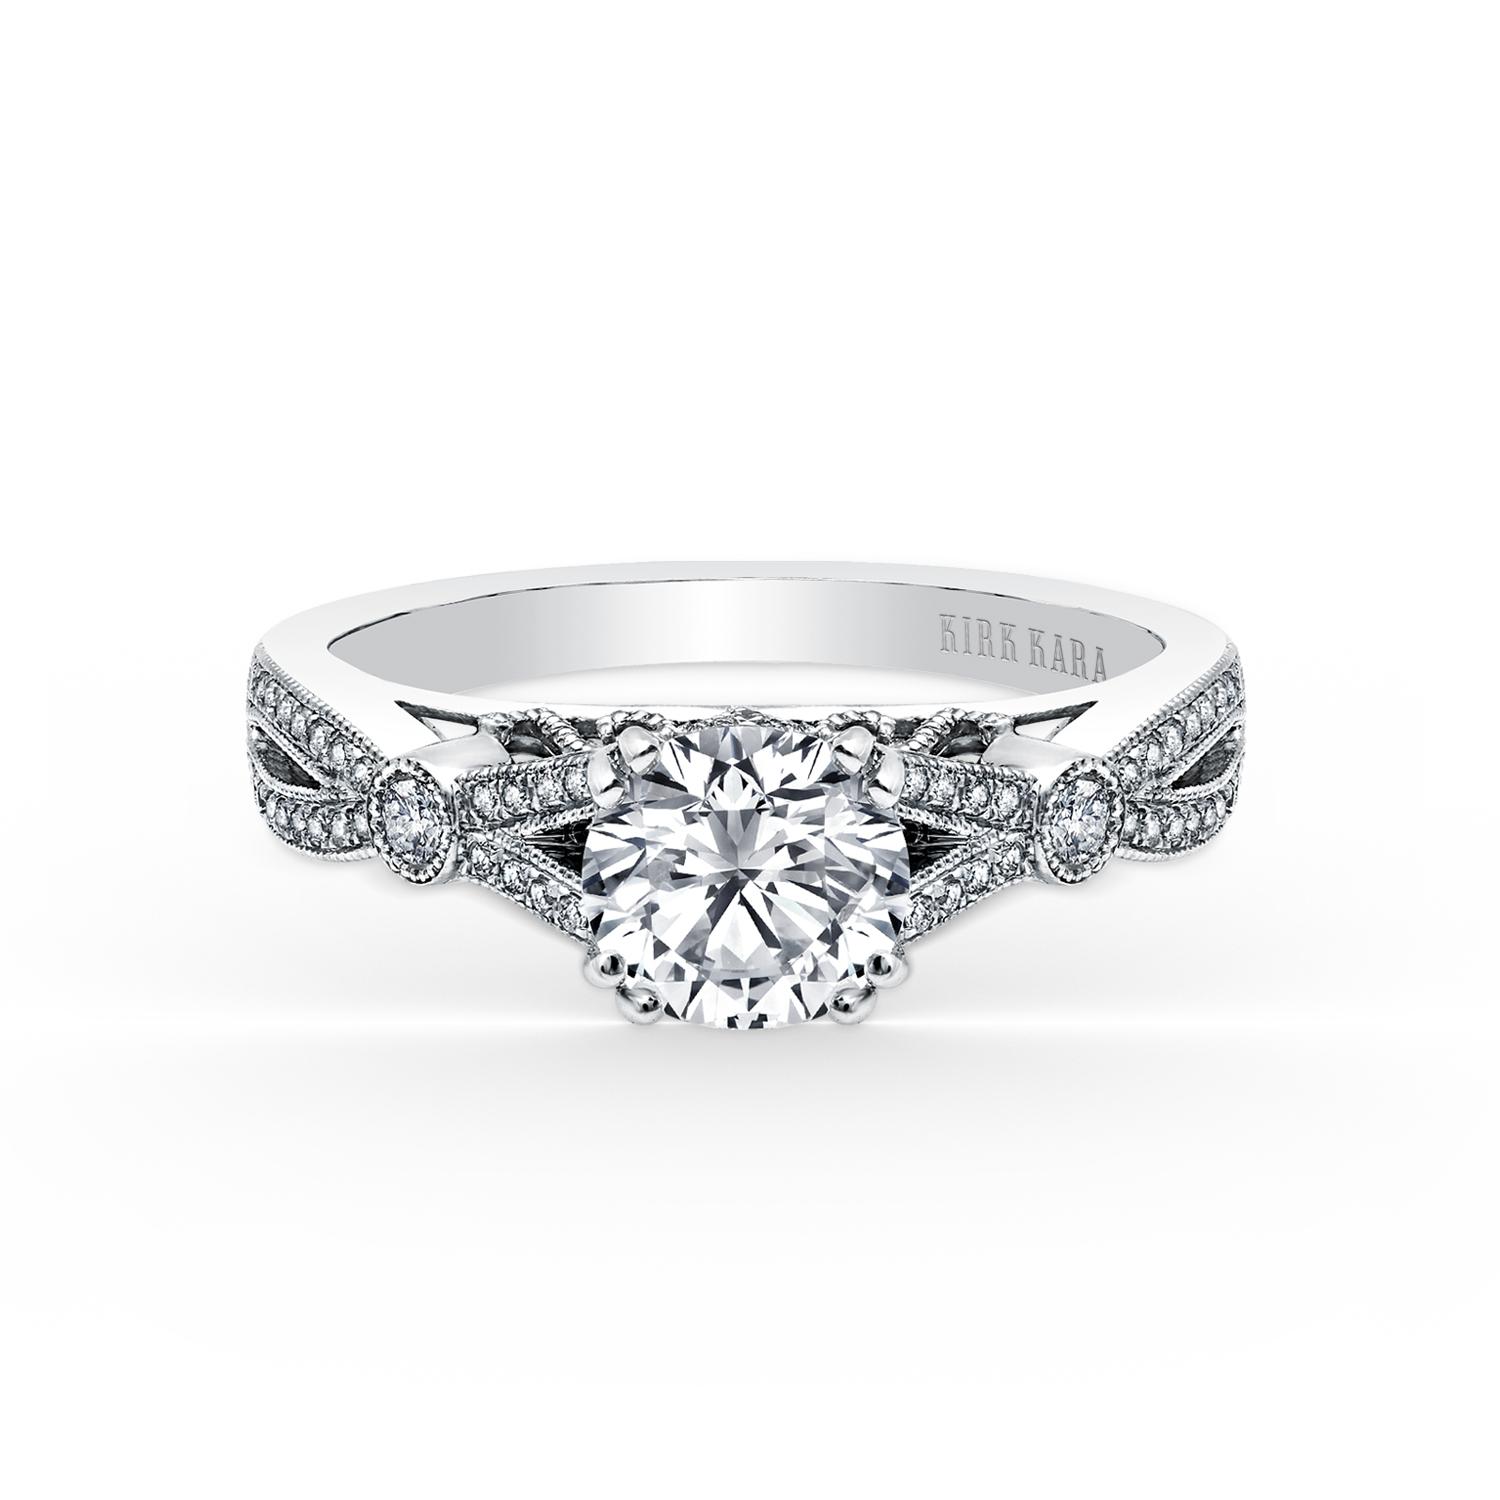 Kirk Kara Diamond Semi-Mount Engagement Ring